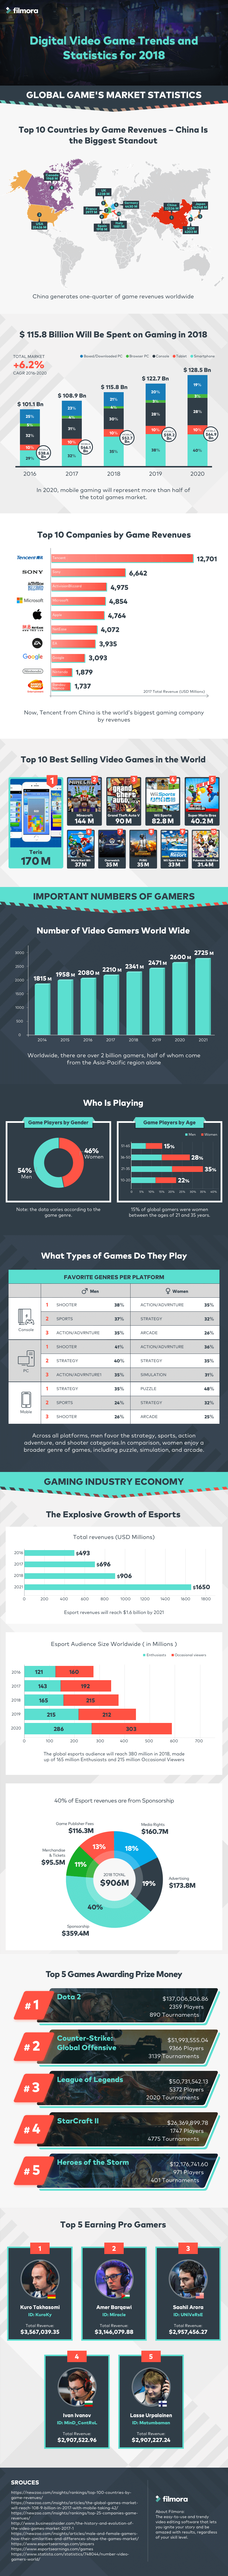 tren dan statistik dari video game